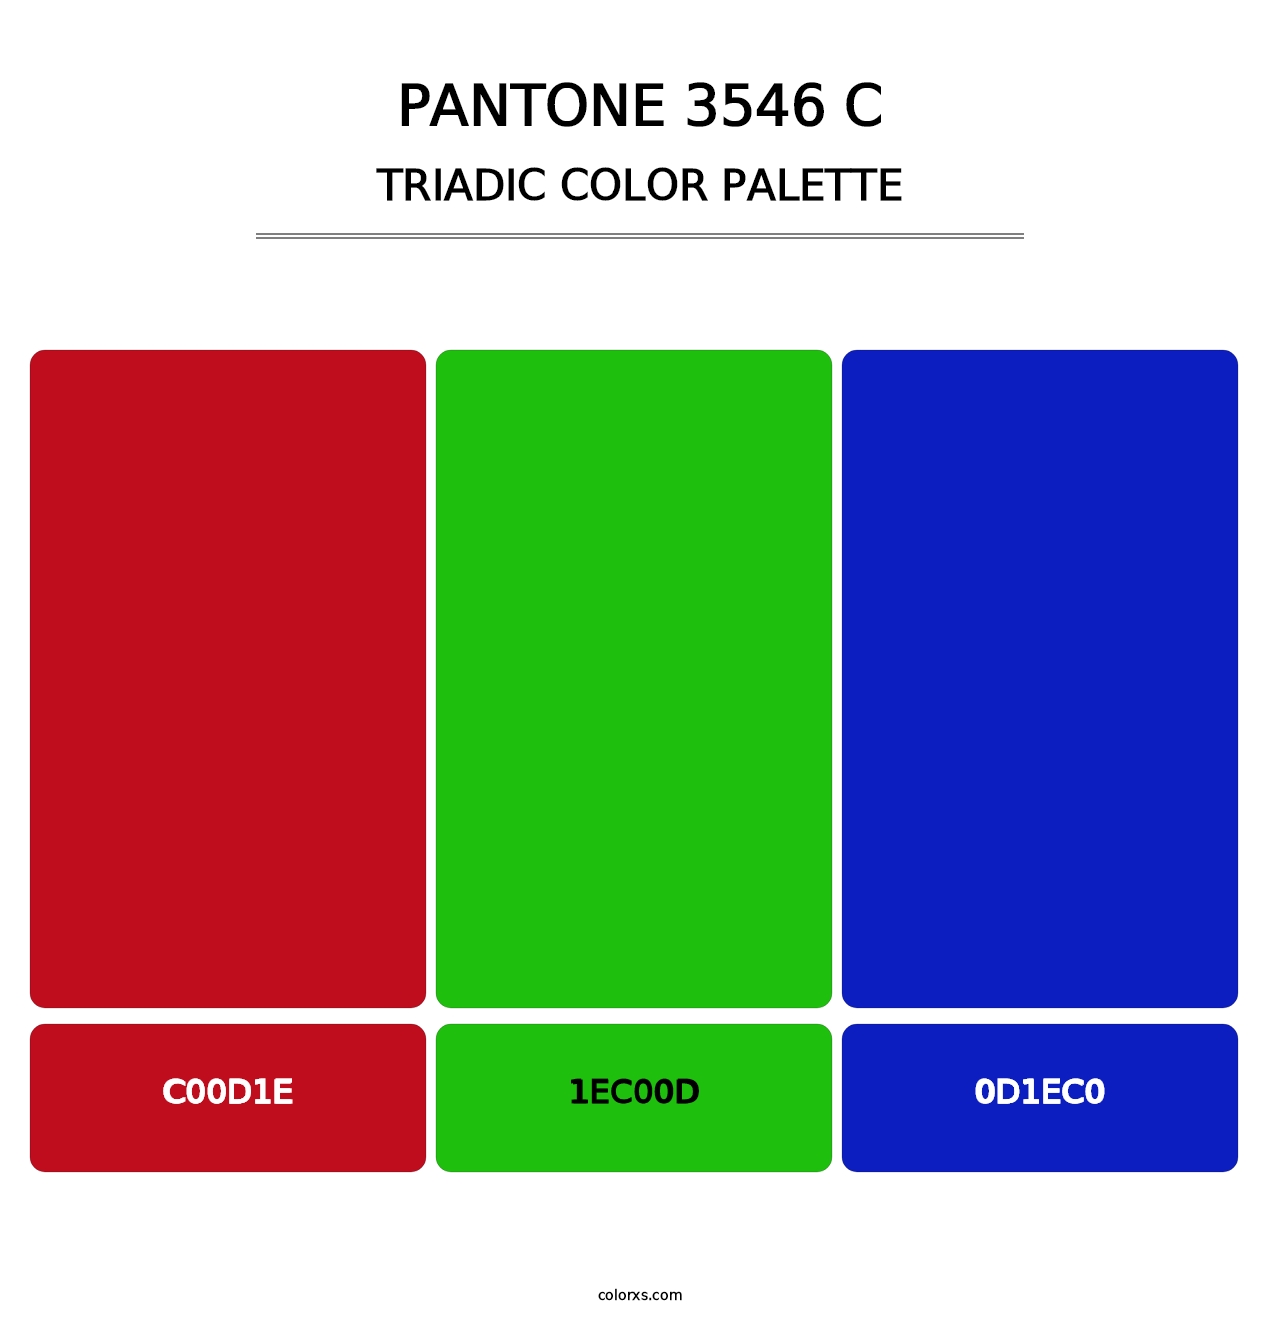 PANTONE 3546 C - Triadic Color Palette